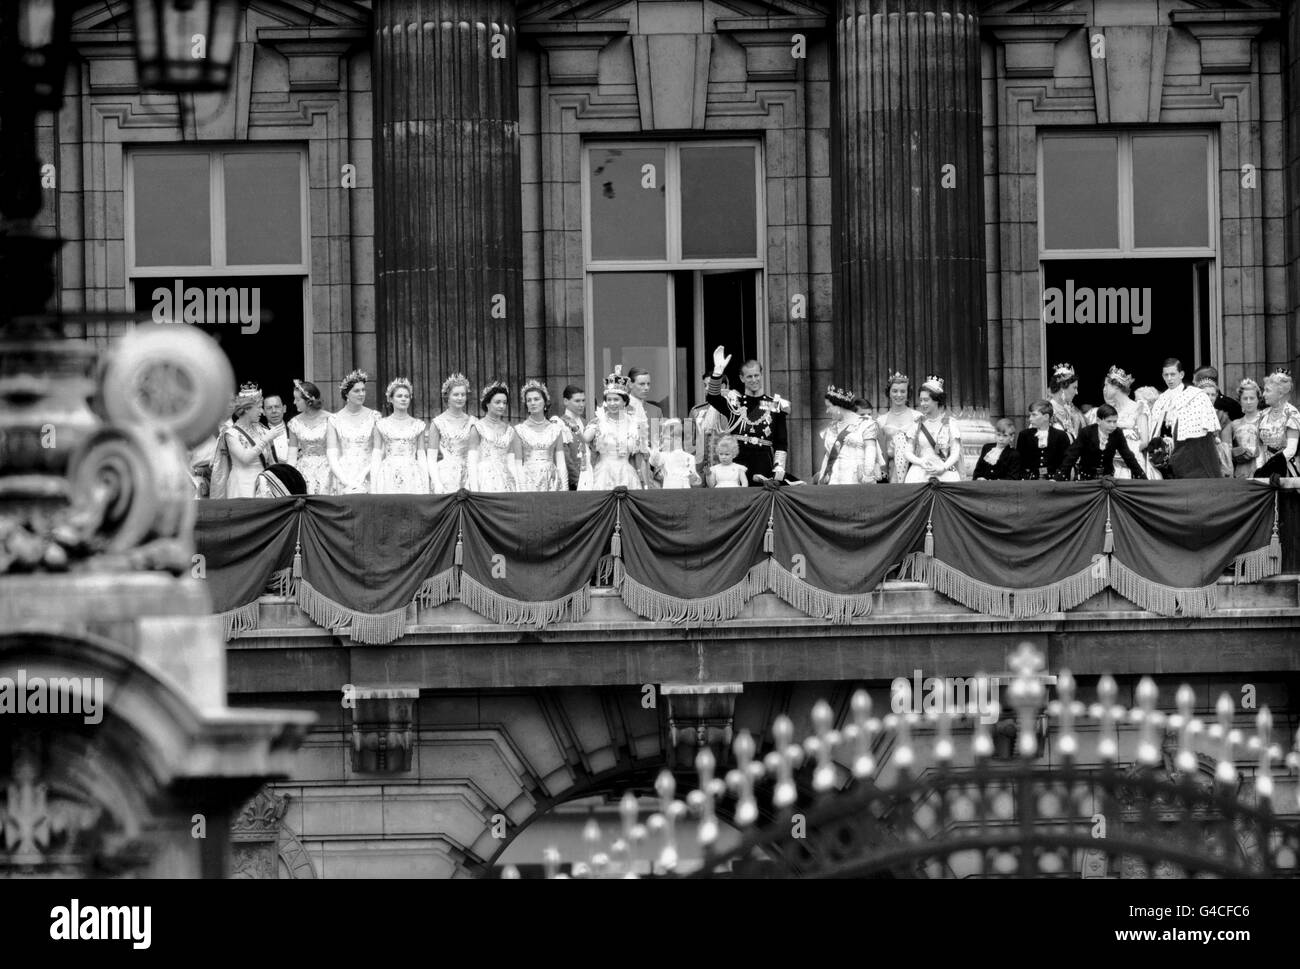 A sinistra della Regina sono: La Principessa reale e le sei Maids d'onore della Regina; Lady Rosemary Spencer-Churchill; Lady Moira Hamilton; Lady Jane Heathcote-Drummond-Willoughby; Lady Anne Coke; lady Mary Baillie-Hamilton; e Lady Jane Vane-Tempest-Stewart. Destra del duca di Edimburgo sono la regina Elisabetta la regina Madre; la principessa Margaret; il principe Riccardo di Gloucester; il principe Guglielmo di Gloucester; la duchessa di Kent; il principe Michele di Kent; la principessa Alexandra di Kent; il duca di Kent; e l'estrema destra, la principessa Alice di Athlone. Foto Stock